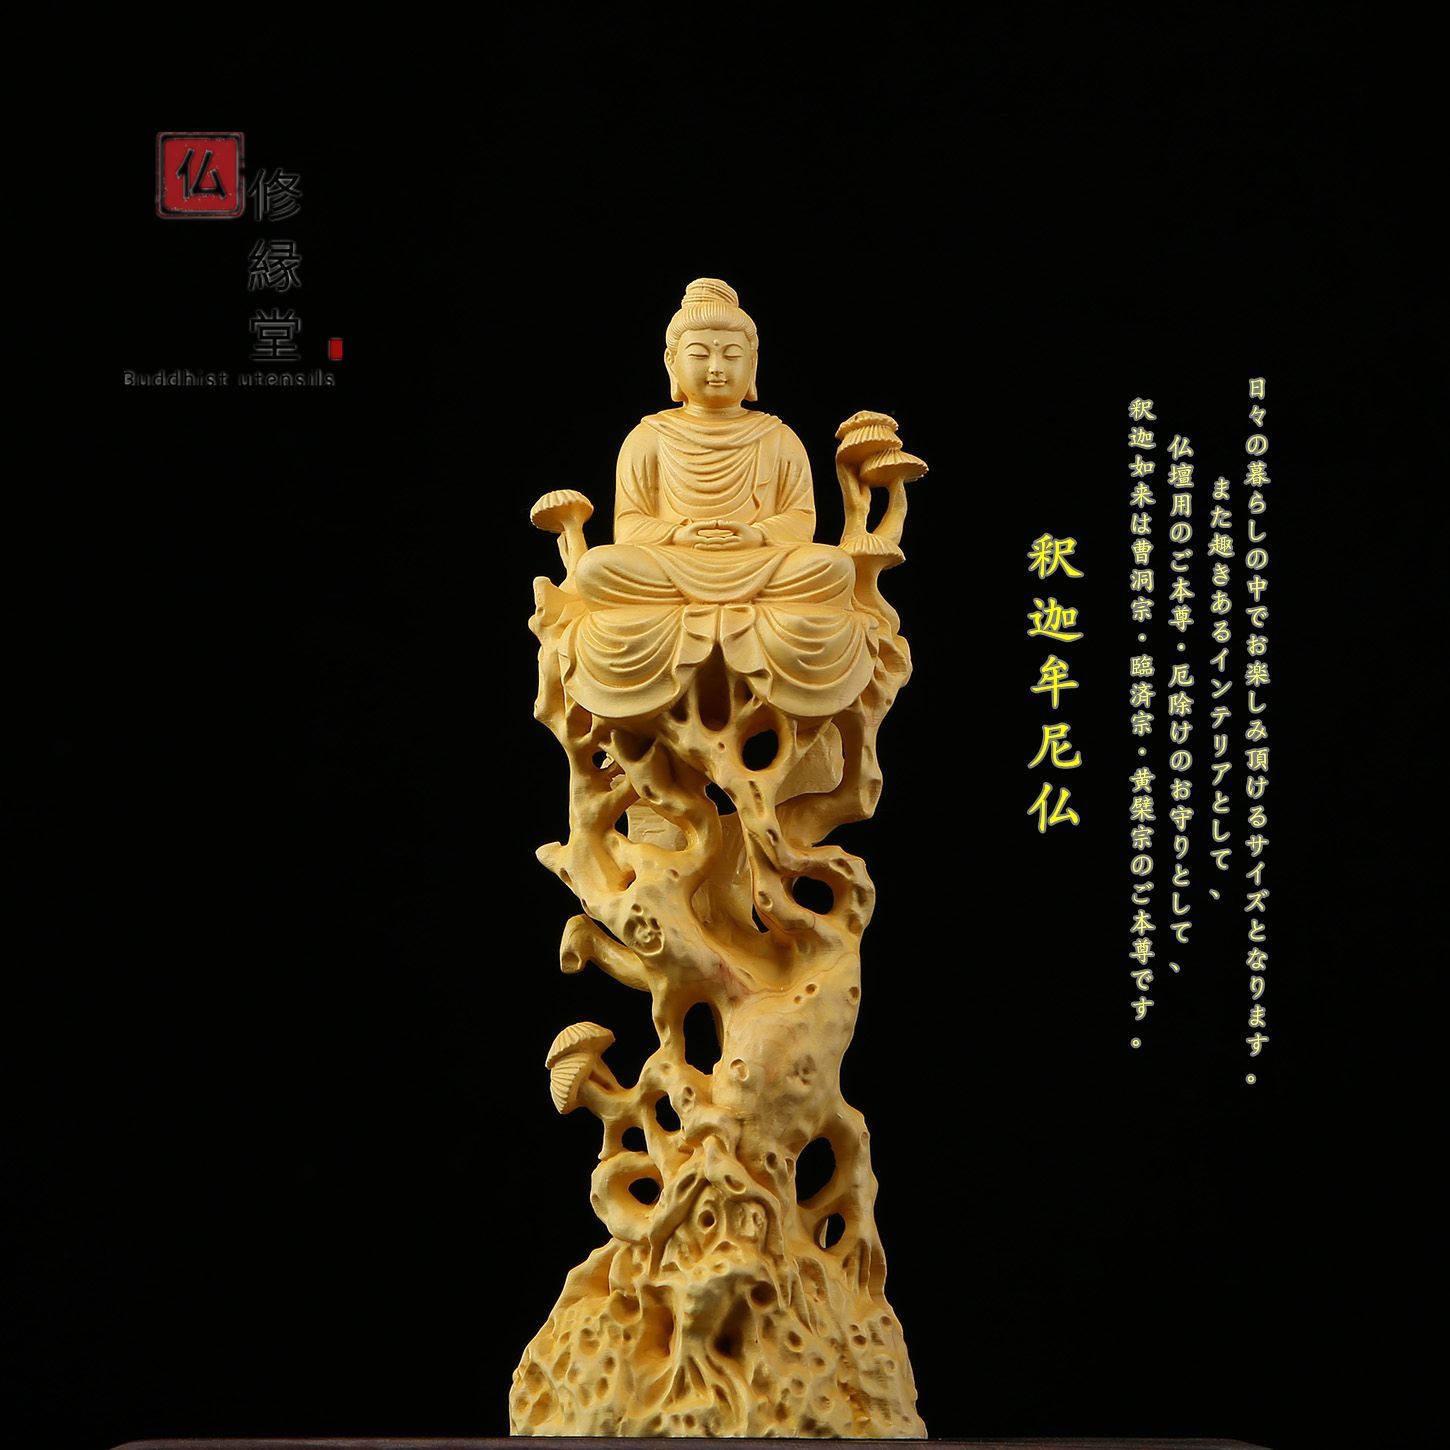 【修縁堂】木彫り 仏像 釈迦如来座像 釈迦牟尼仏 彫刻 仏教工芸品 柘植材